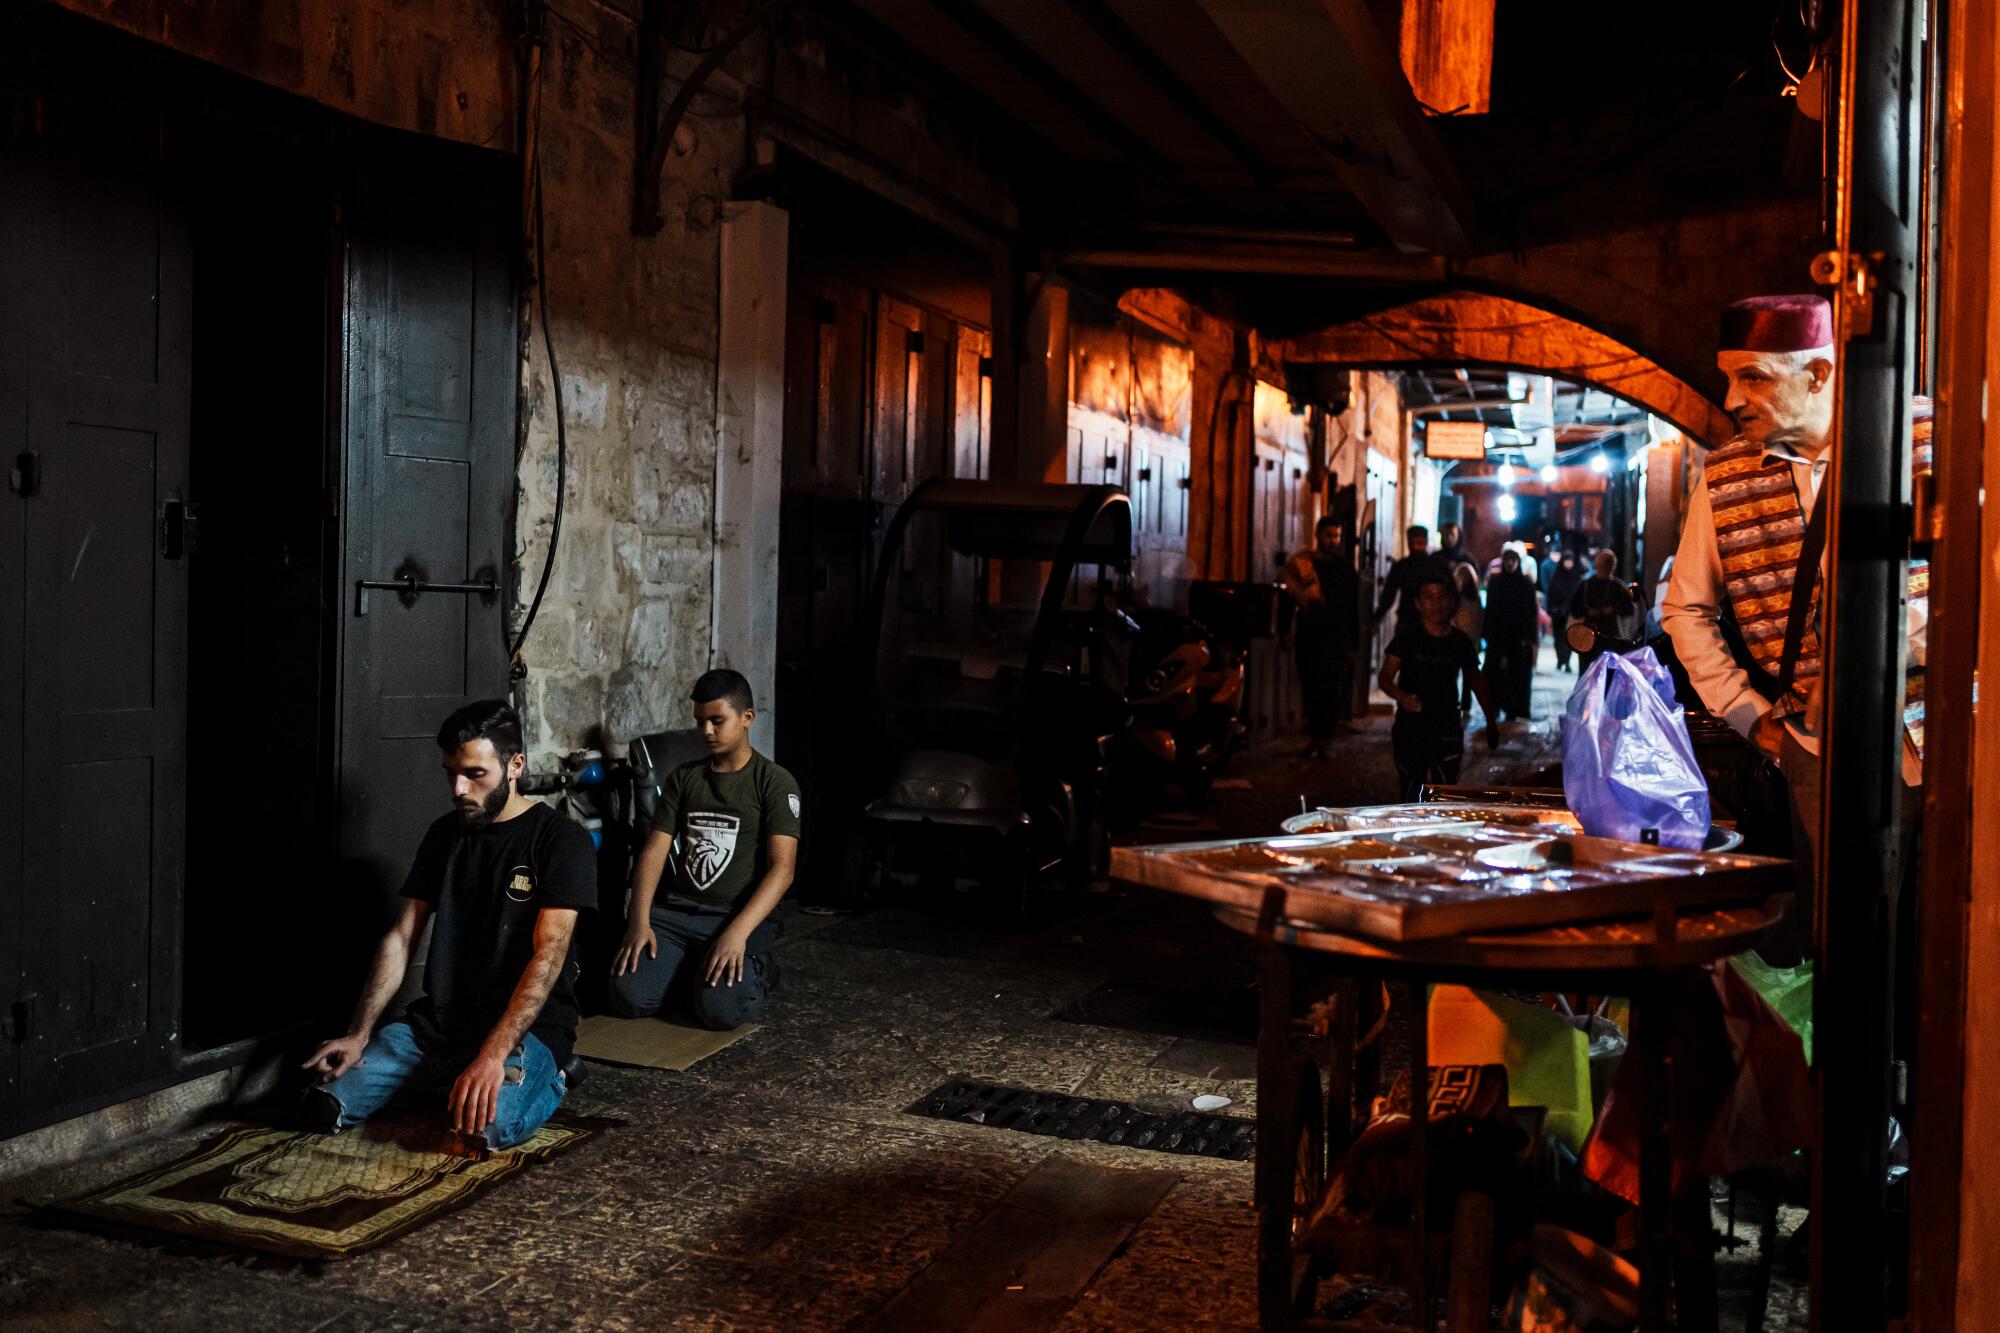 Lojistas fazem orações noturnas na cidade velha de Jerusalém.